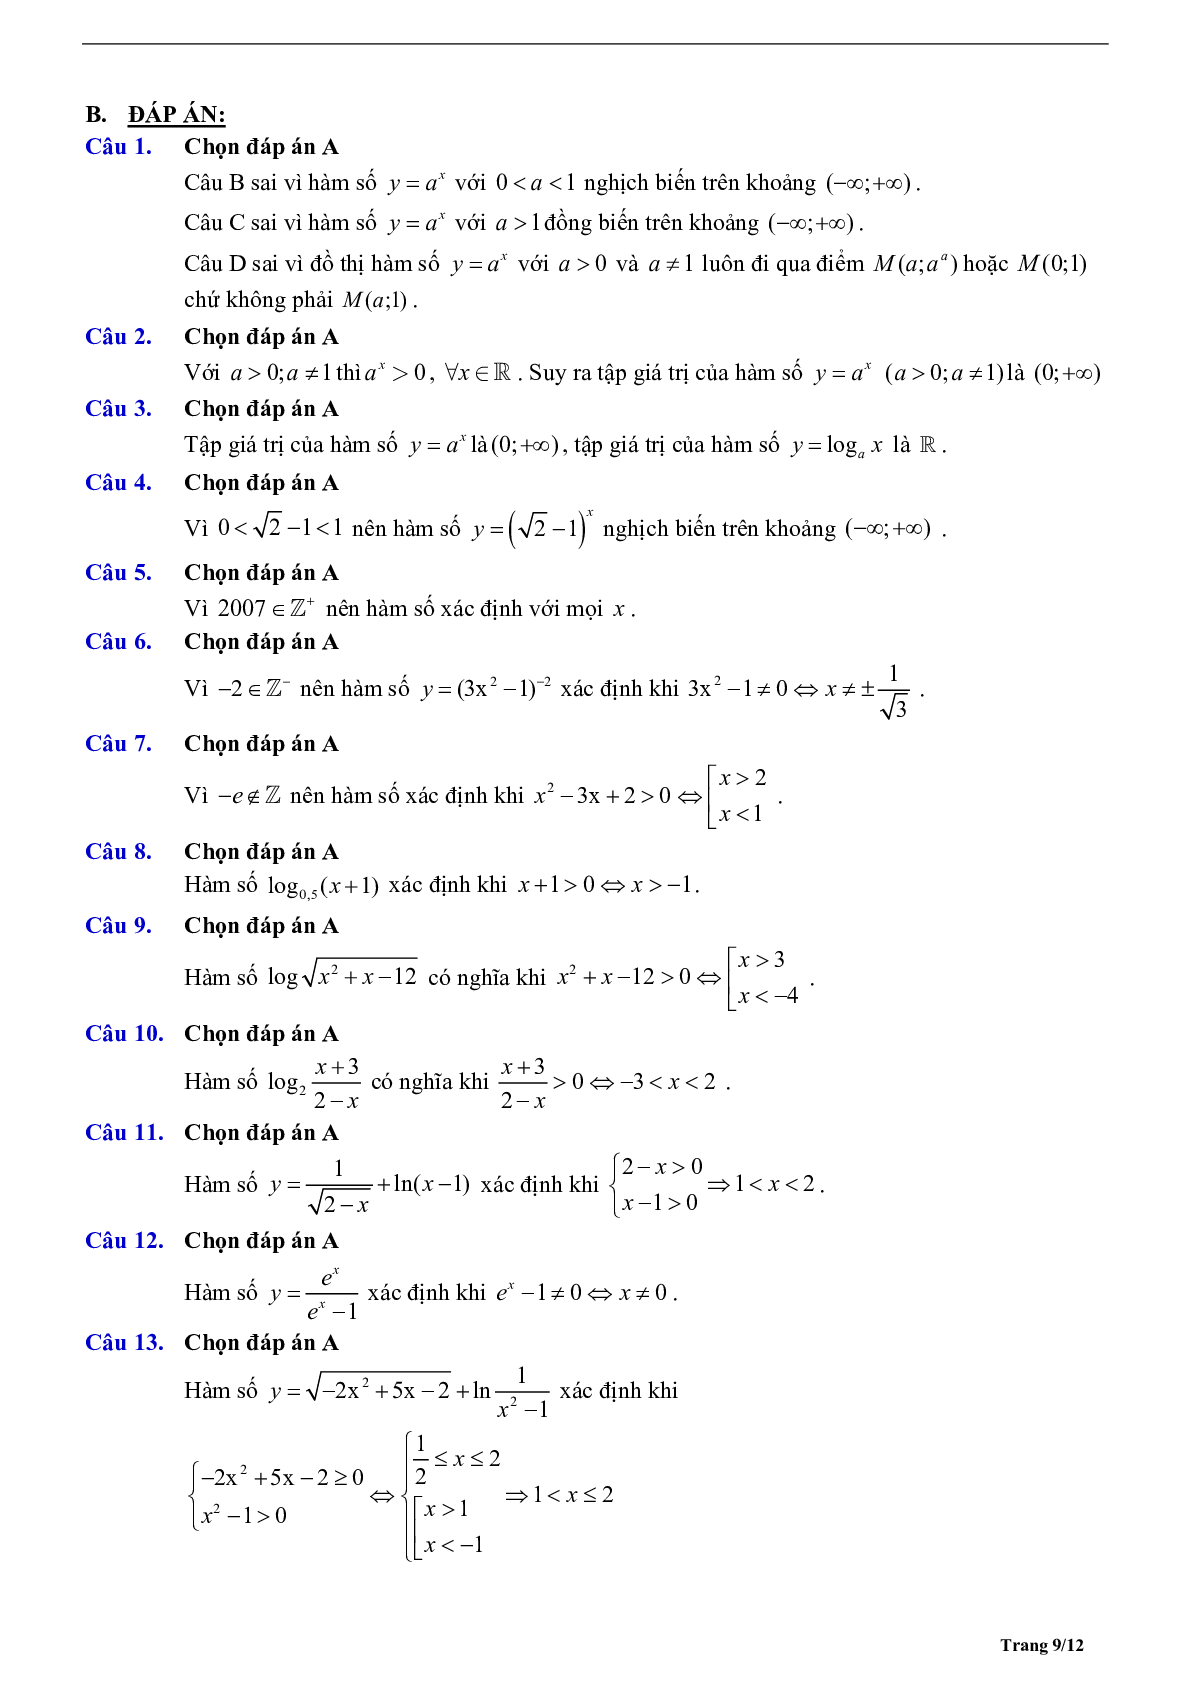 Phương pháp giải Hàm số mũ và Hàm số logarit 2023 (lý thuyết và bài tập) (trang 9)